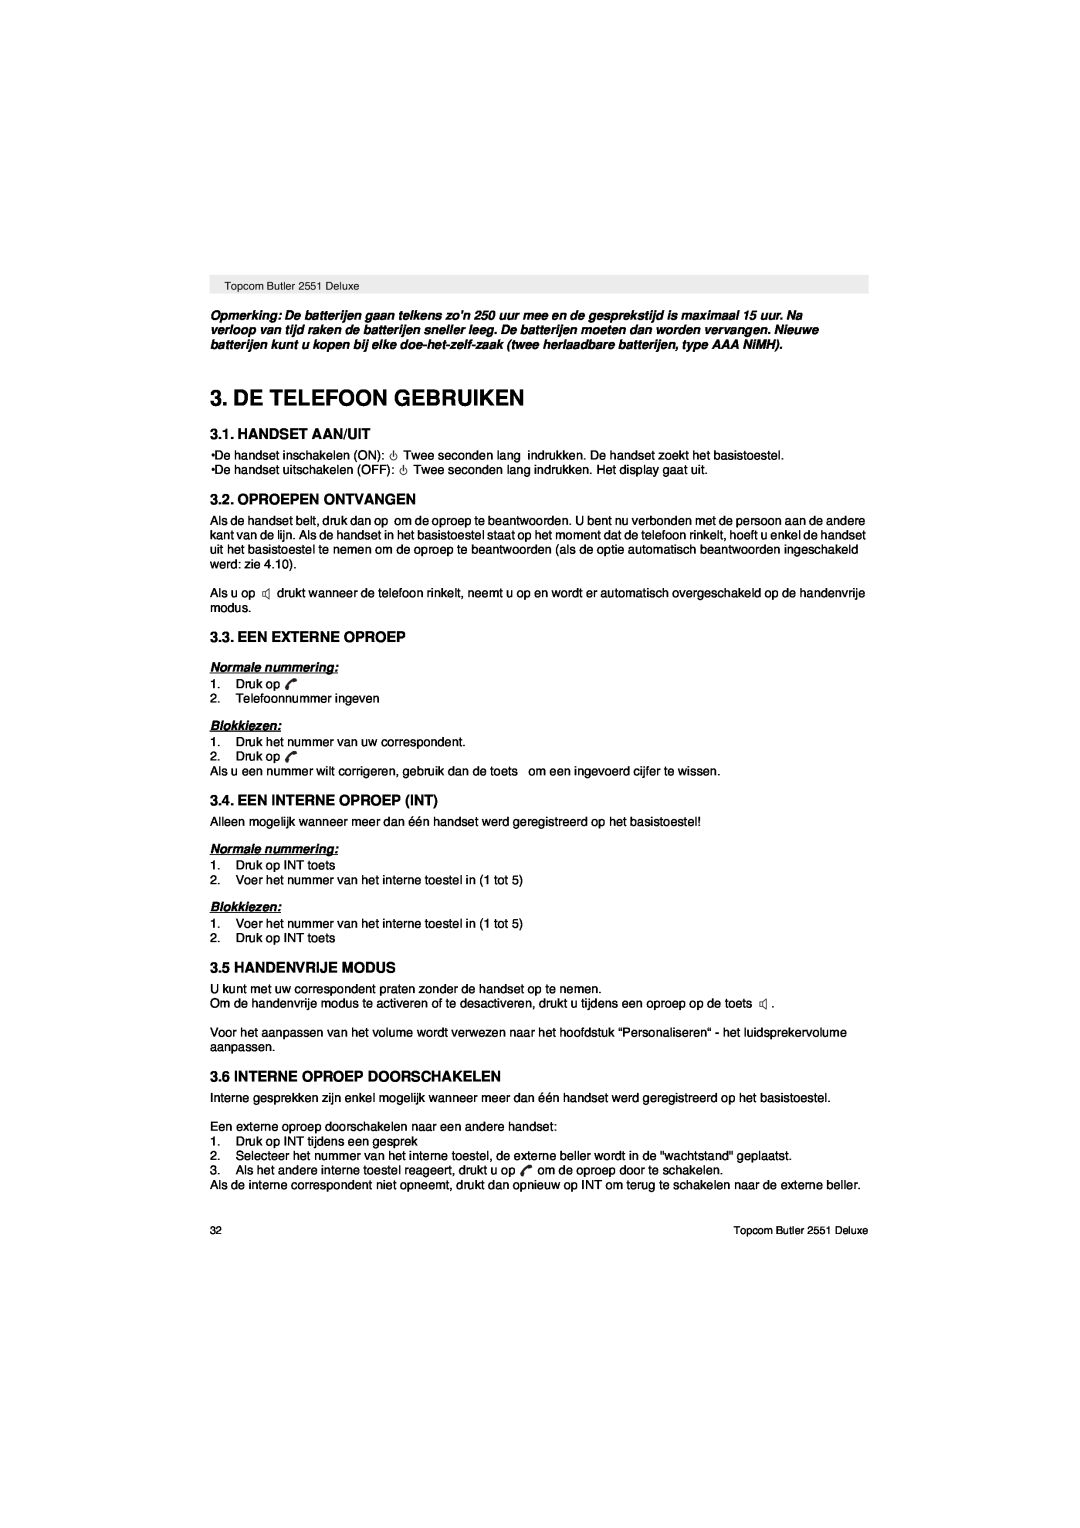 Topcom 2551 manual De Telefoon Gebruiken, Handset Aan/Uit, Oproepen Ontvangen, Een Externe Oproep, Een Interne Oproep Int 